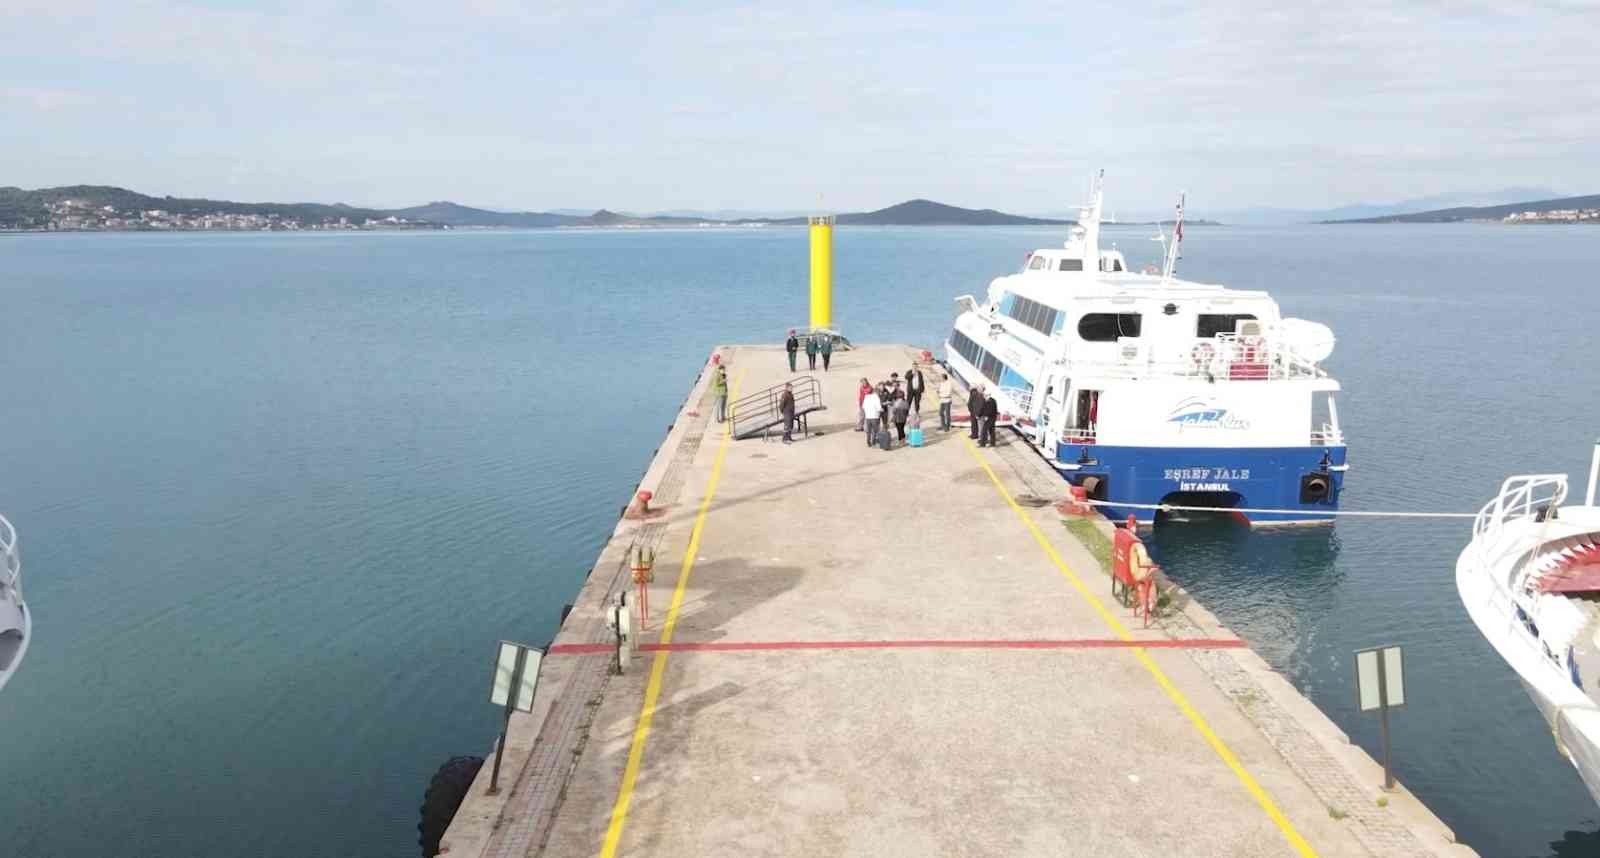 Türkiye’nin en batısından dünyaya açılan sınır kapısı olmasıyla bilinen Ayvalık Deniz Hudut Kapısı, 25 ay sonra yeniden açıldı. Pandemi nedeniyle ...